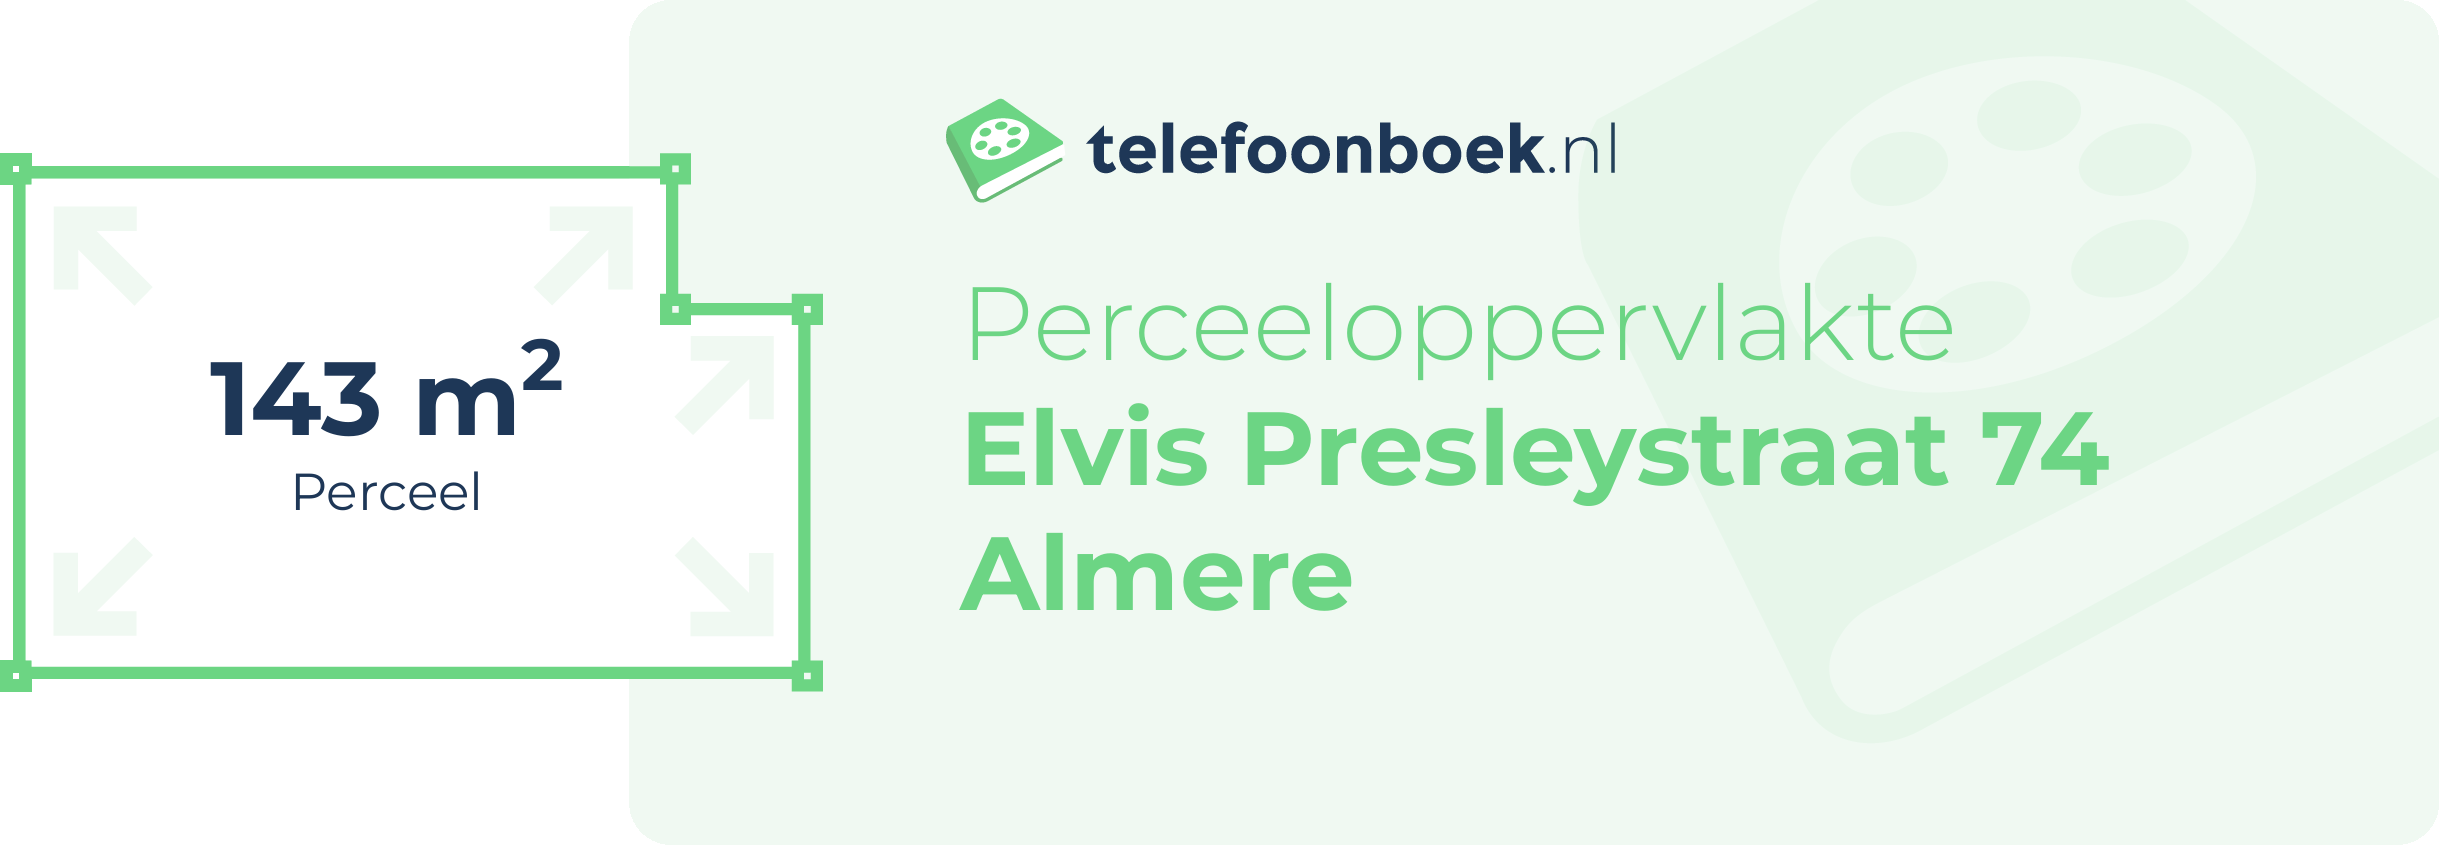 Perceeloppervlakte Elvis Presleystraat 74 Almere